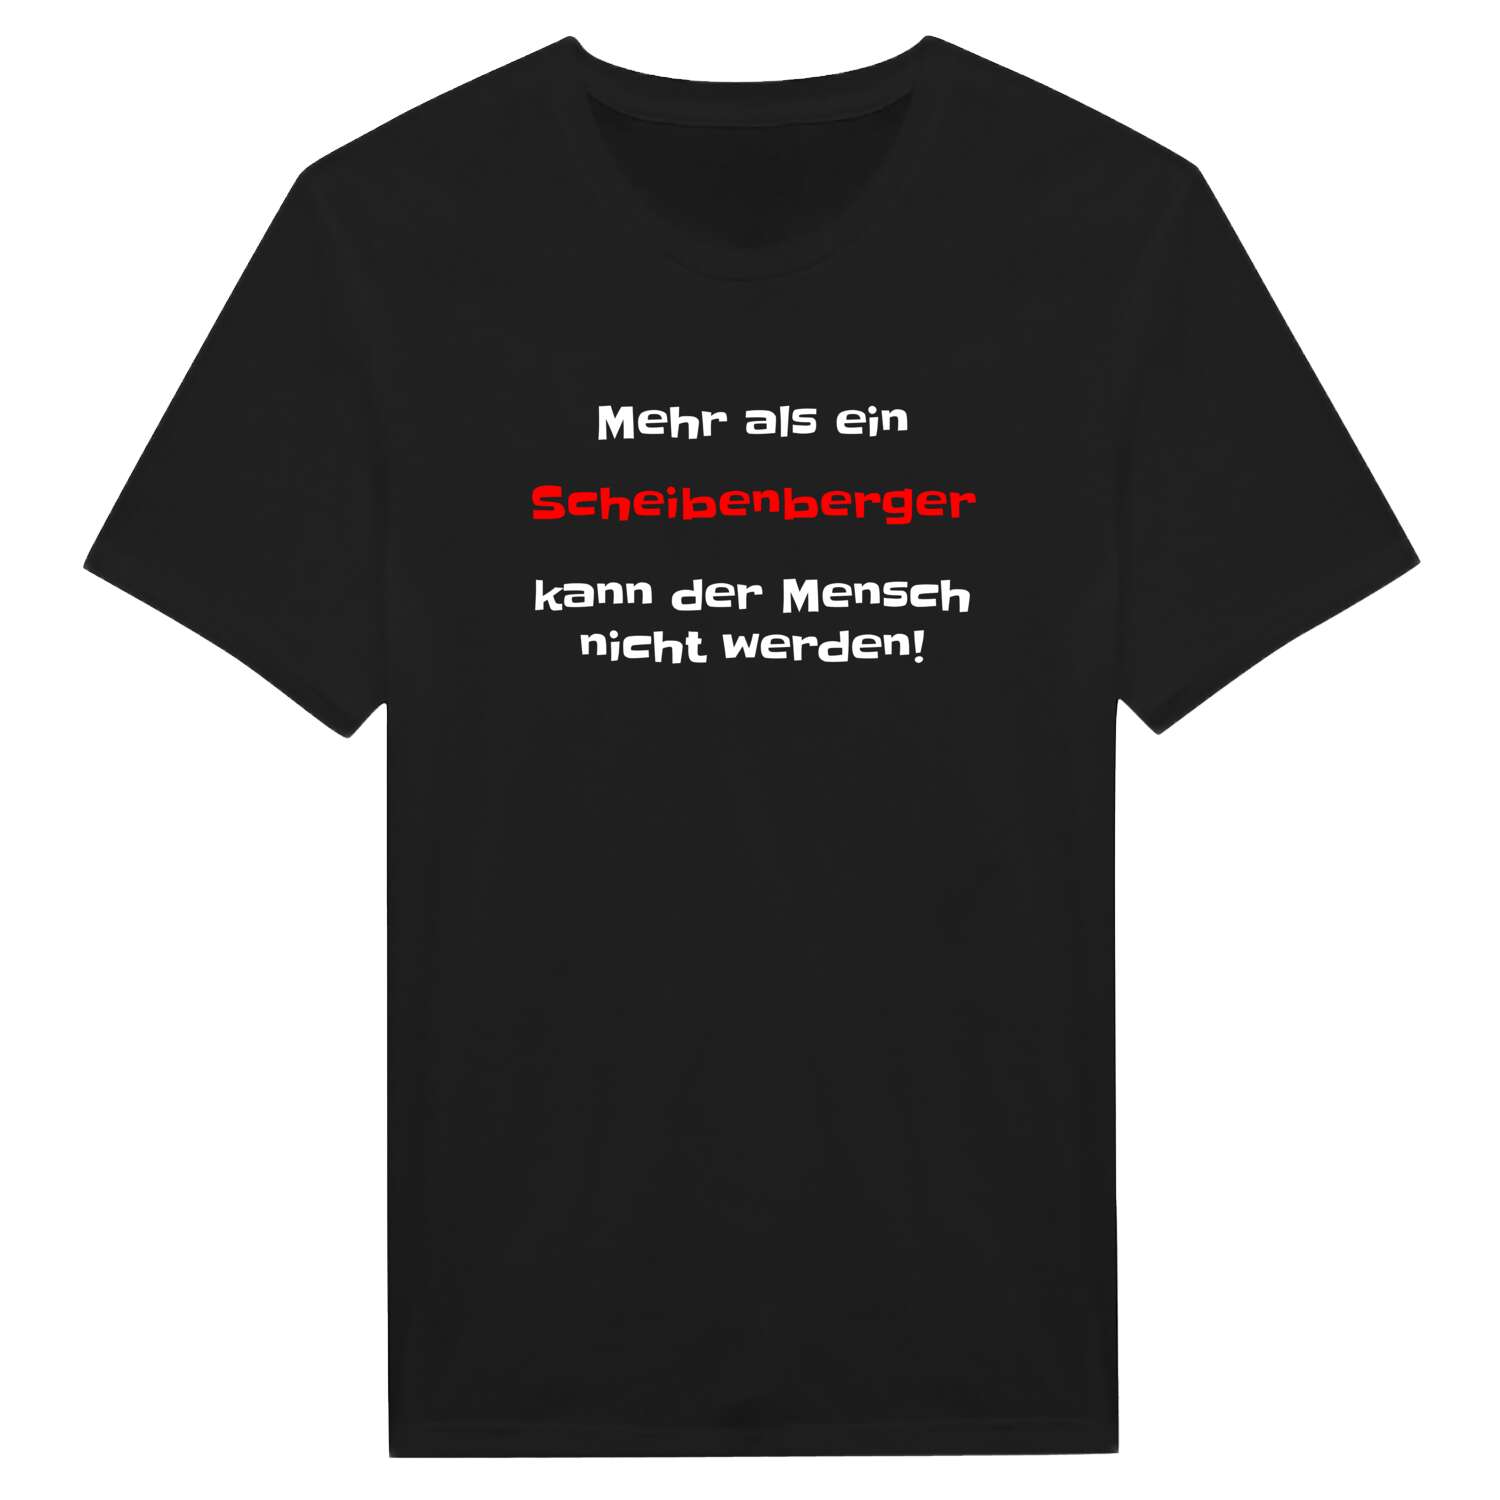 Scheibenberg T-Shirt »Mehr als ein«